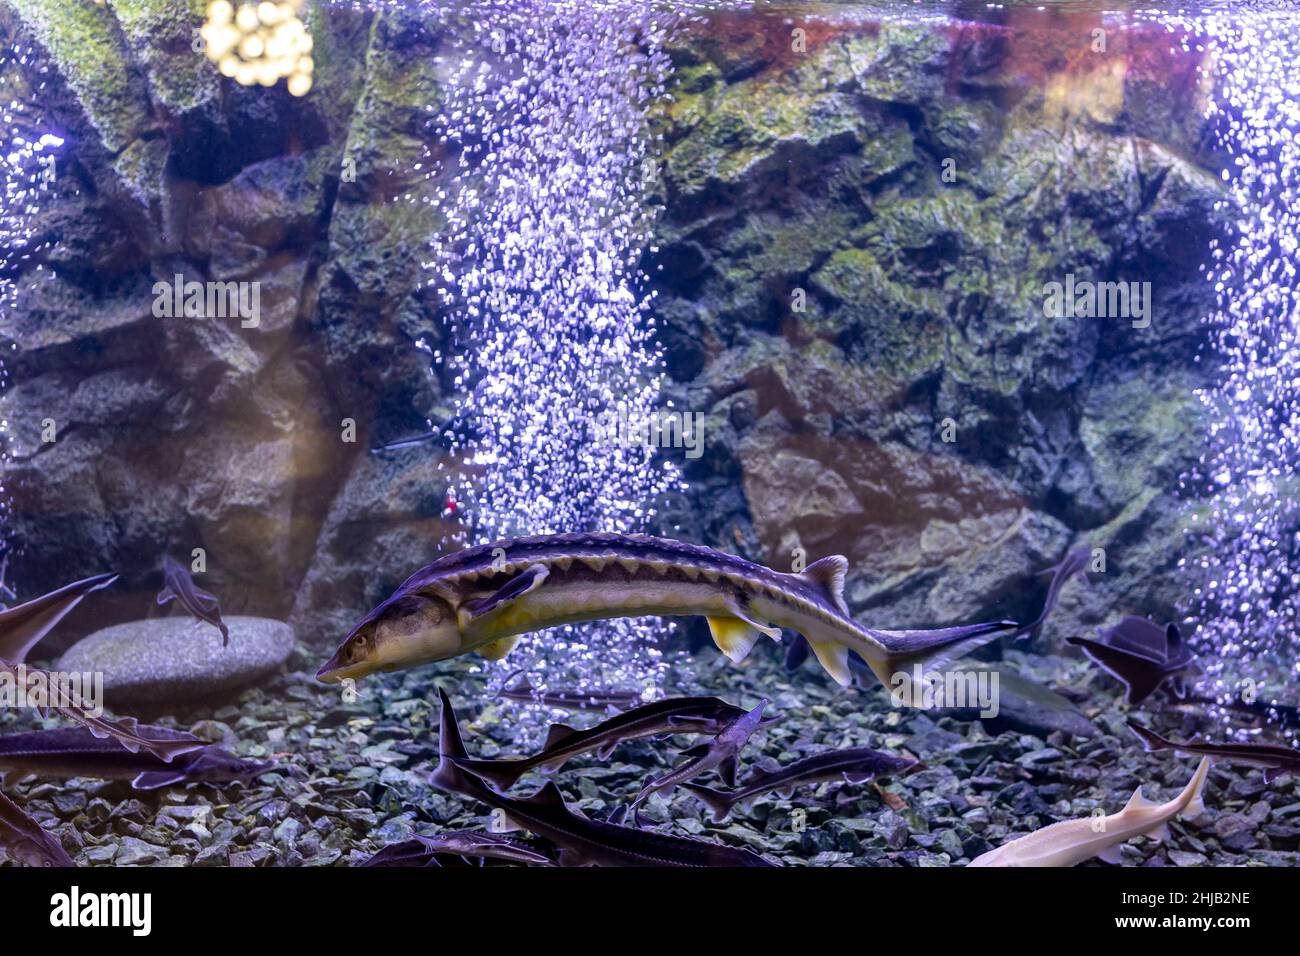 sturgeon fish in the aquarium. White sturgeon Stock Photo